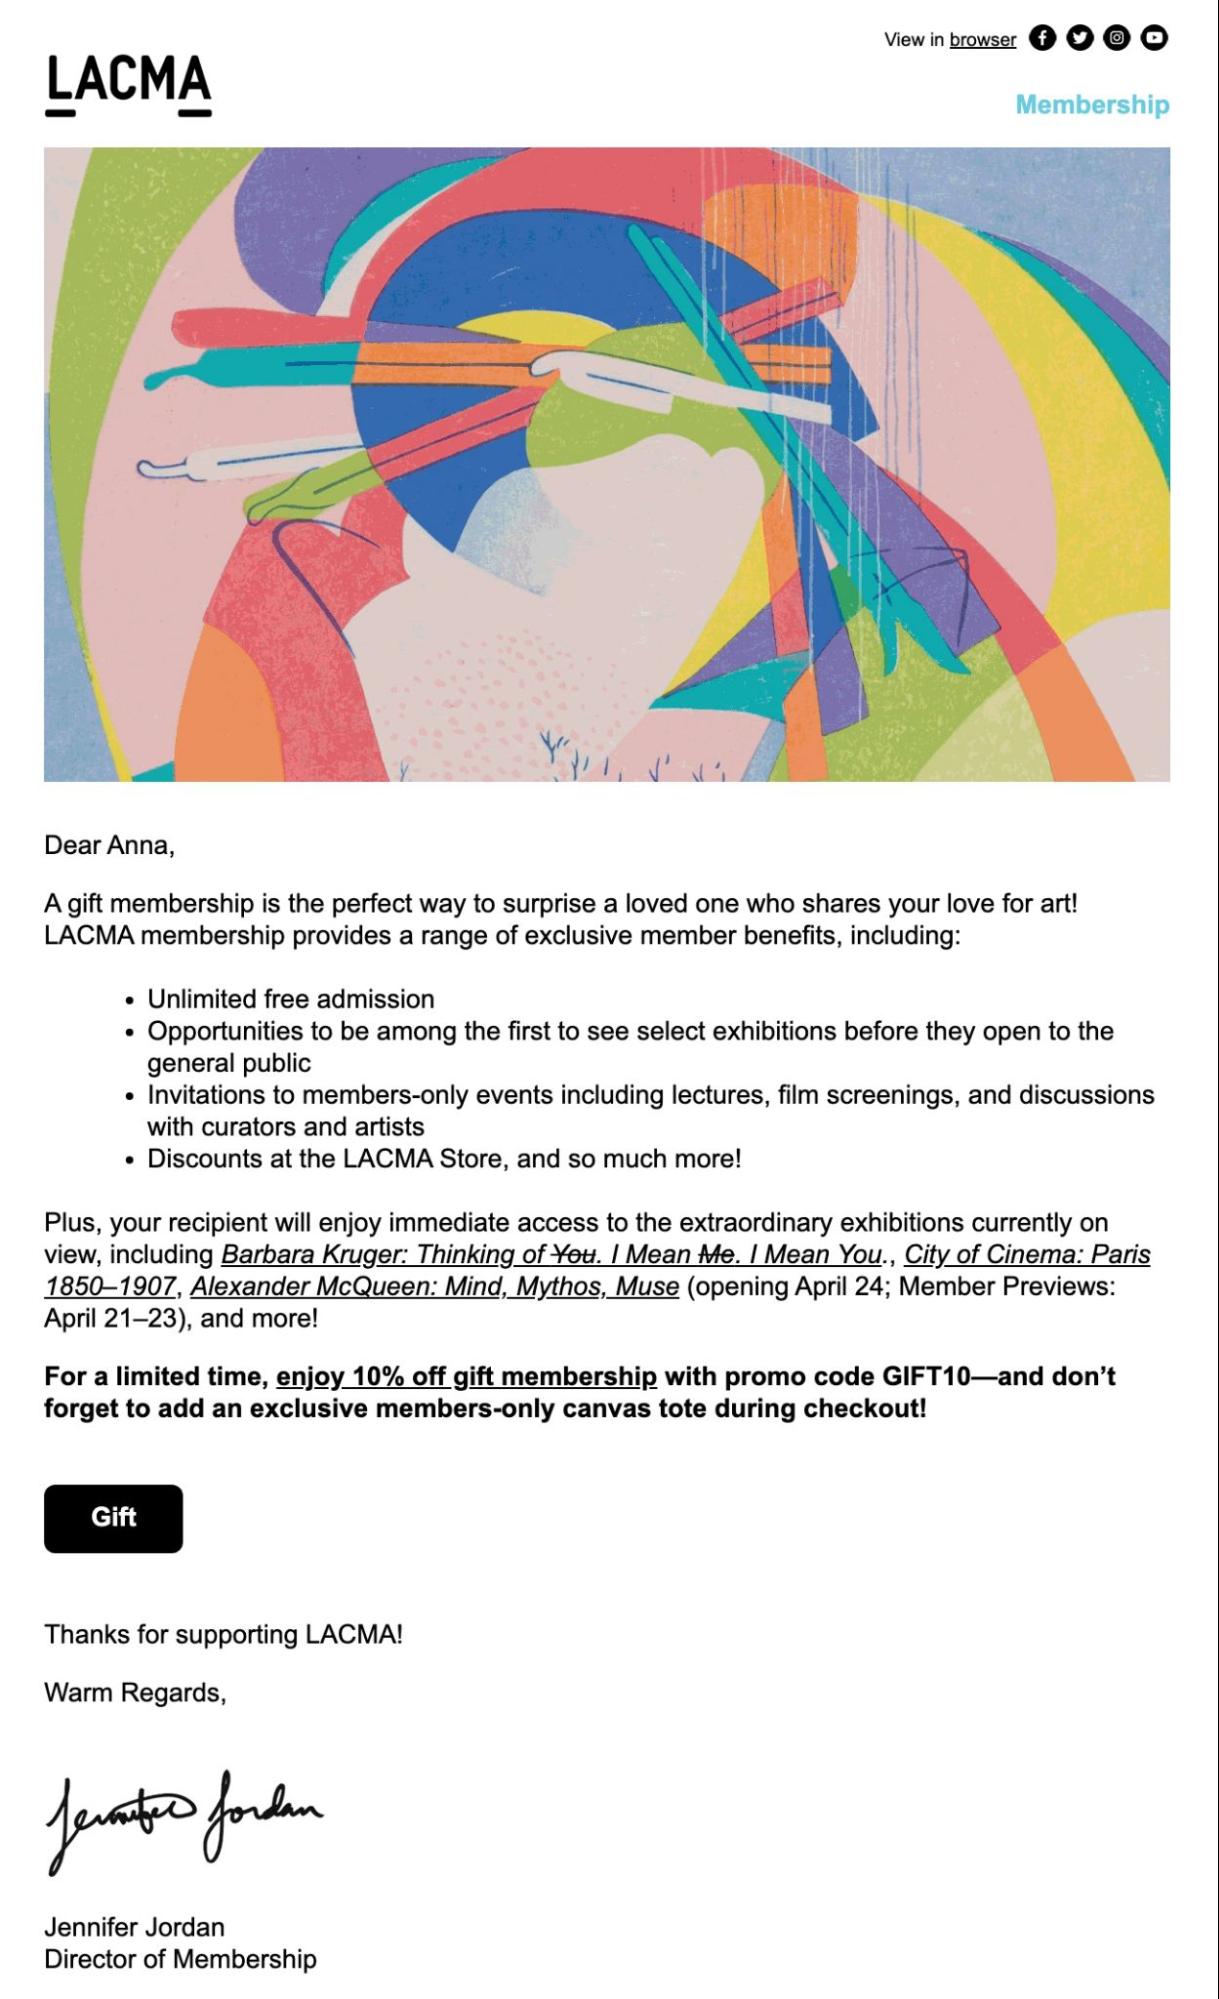 Exemplu de e-mail promoțional LACMA